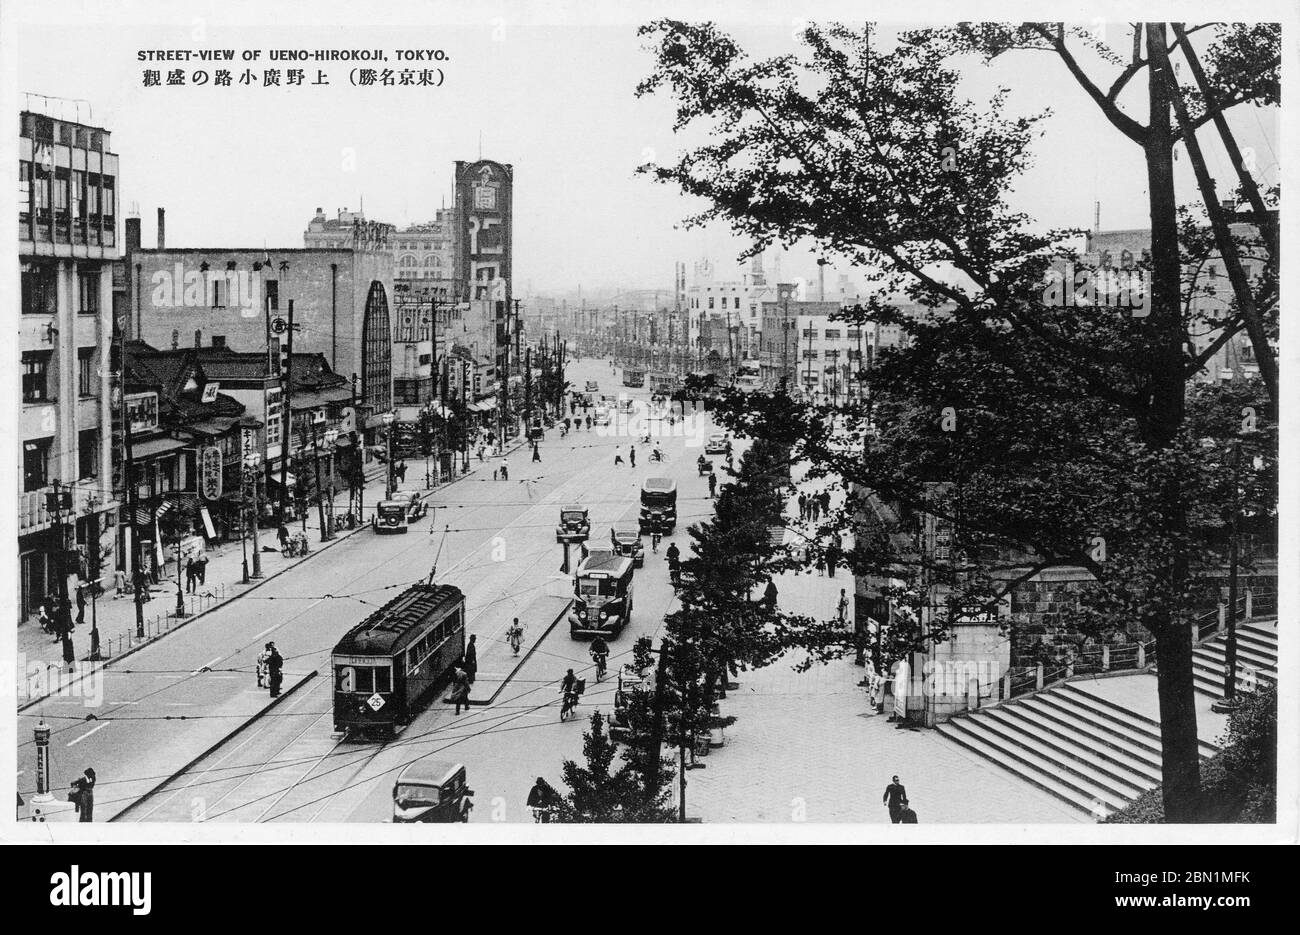 [ 1930er Jahre Japan - Straßenansicht von Ueno Hirokoji, Tokyo ] - Straßenbahnen, Busse und Autos in Ueno Hirokoji in Tokio. Auf der rechten Seite befindet sich der Eingang zum Ueno Park. Vintage-Postkarte des 20. Jahrhunderts. Stockfoto